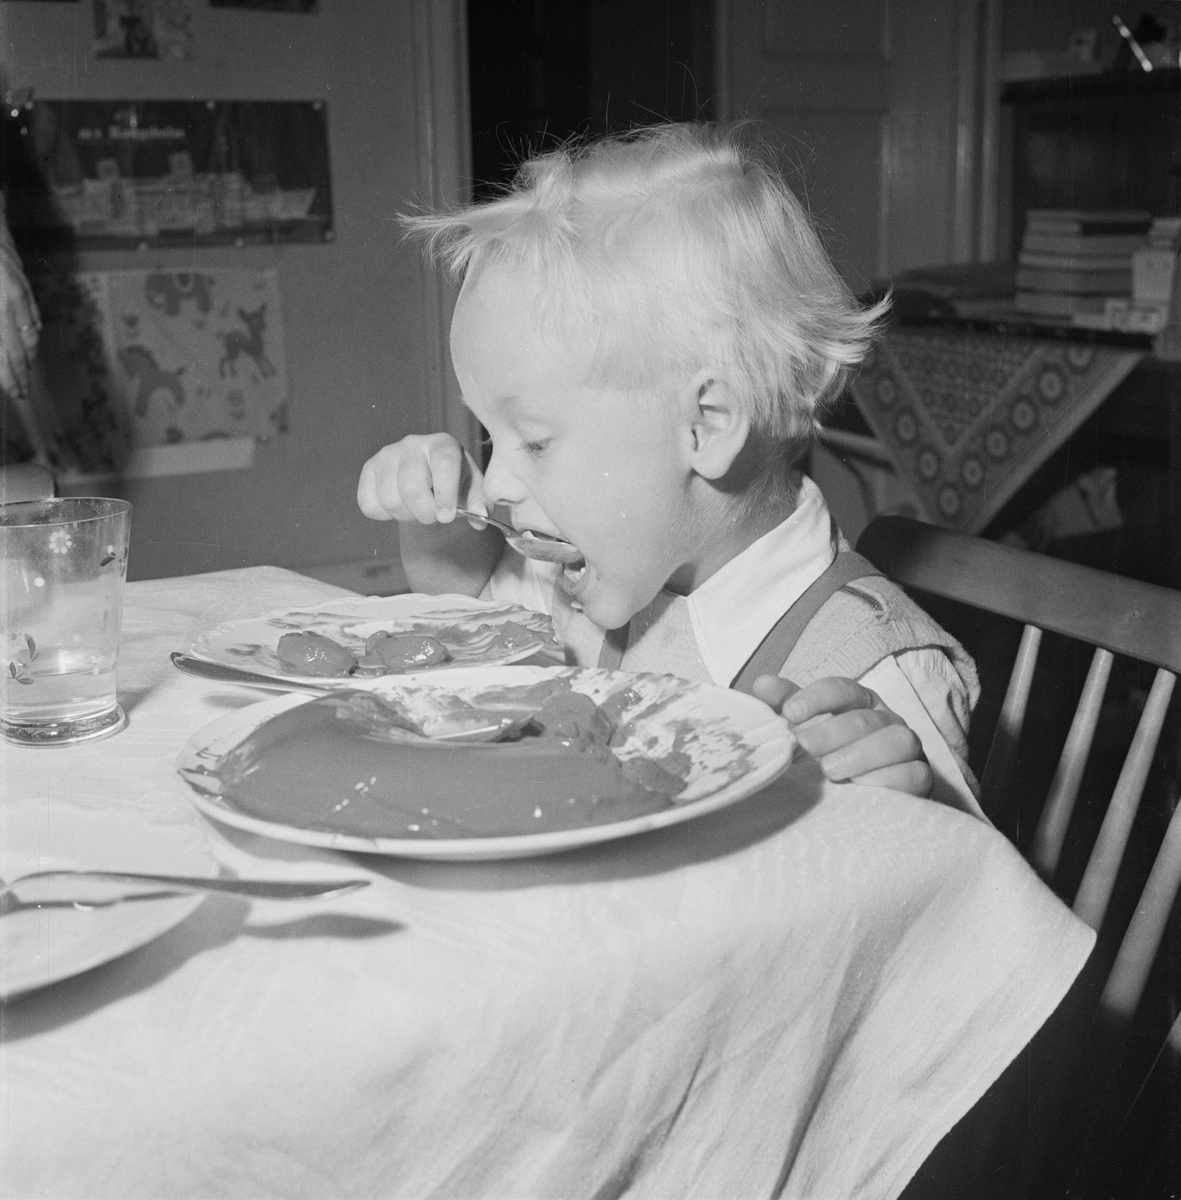 Pojke sitter vid matbord och äter, Uppsala 1954